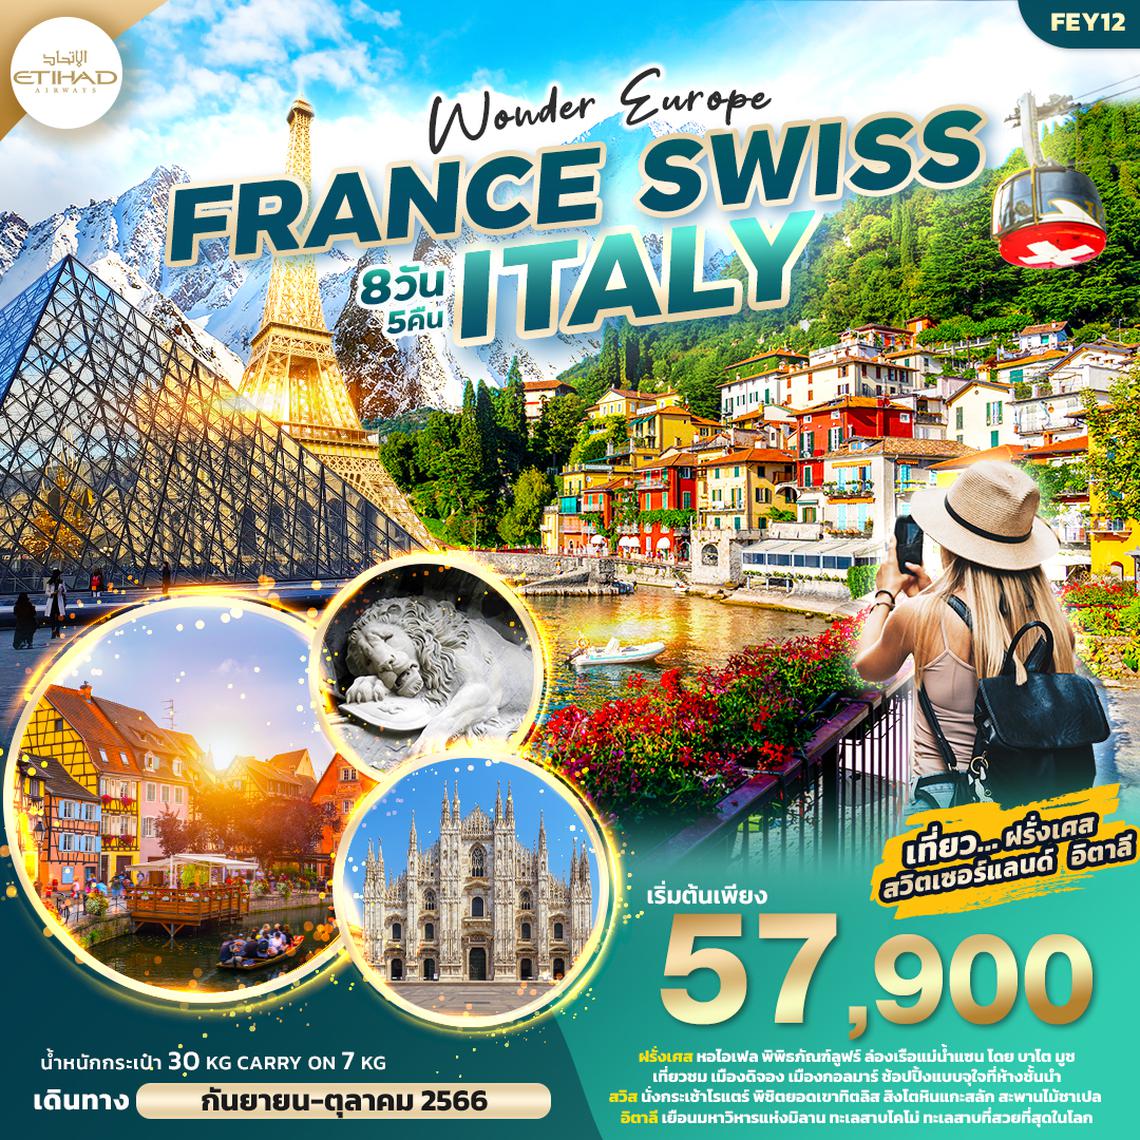 ทัวร์ยุโรป WONDER EUROPE FRANCE SWISS ITALY ฝรั่งเศส สวิตเซอร์แลนด์ อิตาลี 8วัน 5คืน